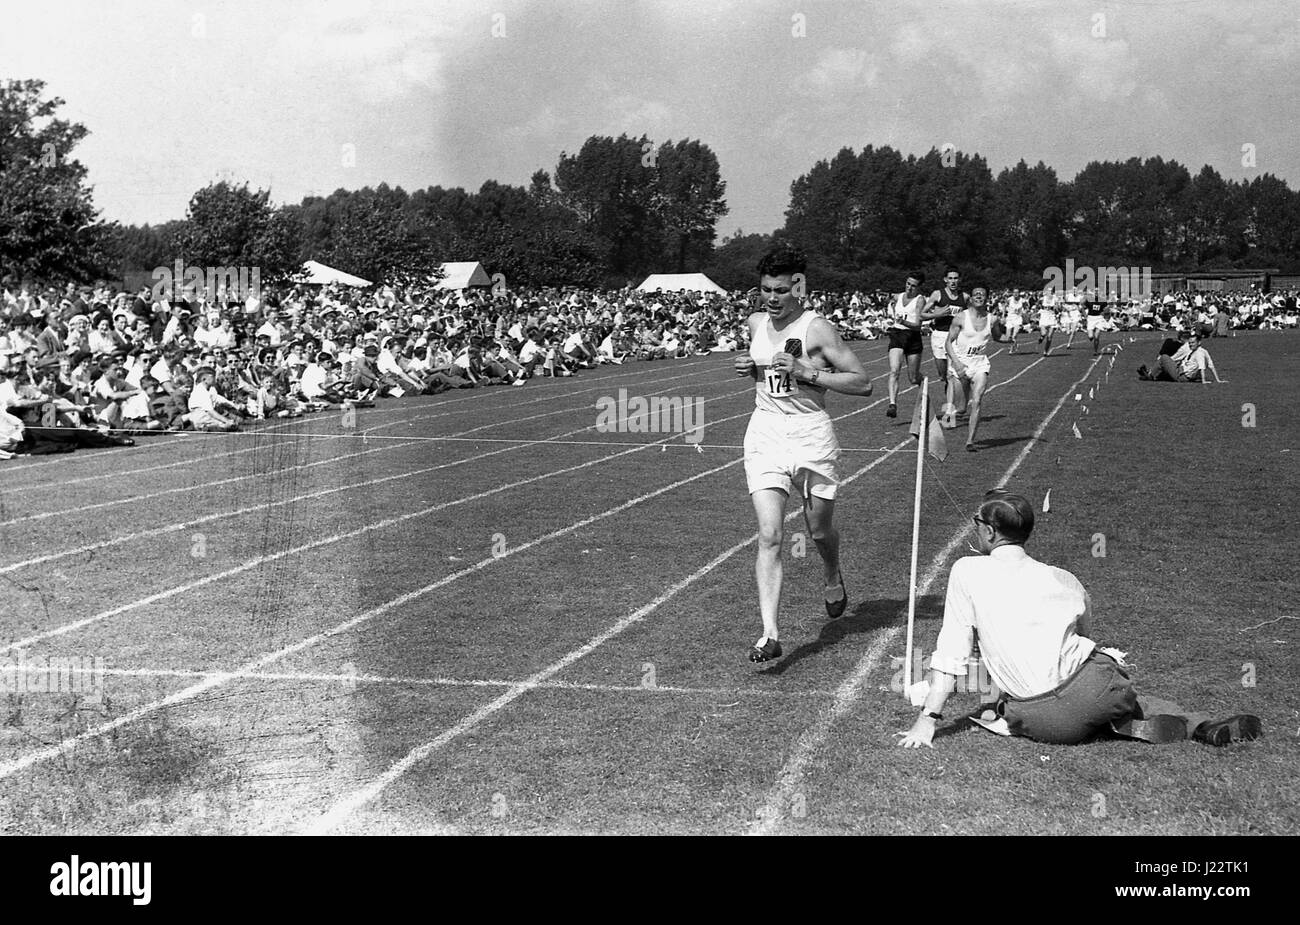 Années 1950, historiques, les coureurs prenant part à des courses à l'Association athlétique amateur Championships de Buckinghamshire, Angleterre, Royaume-Uni. Banque D'Images